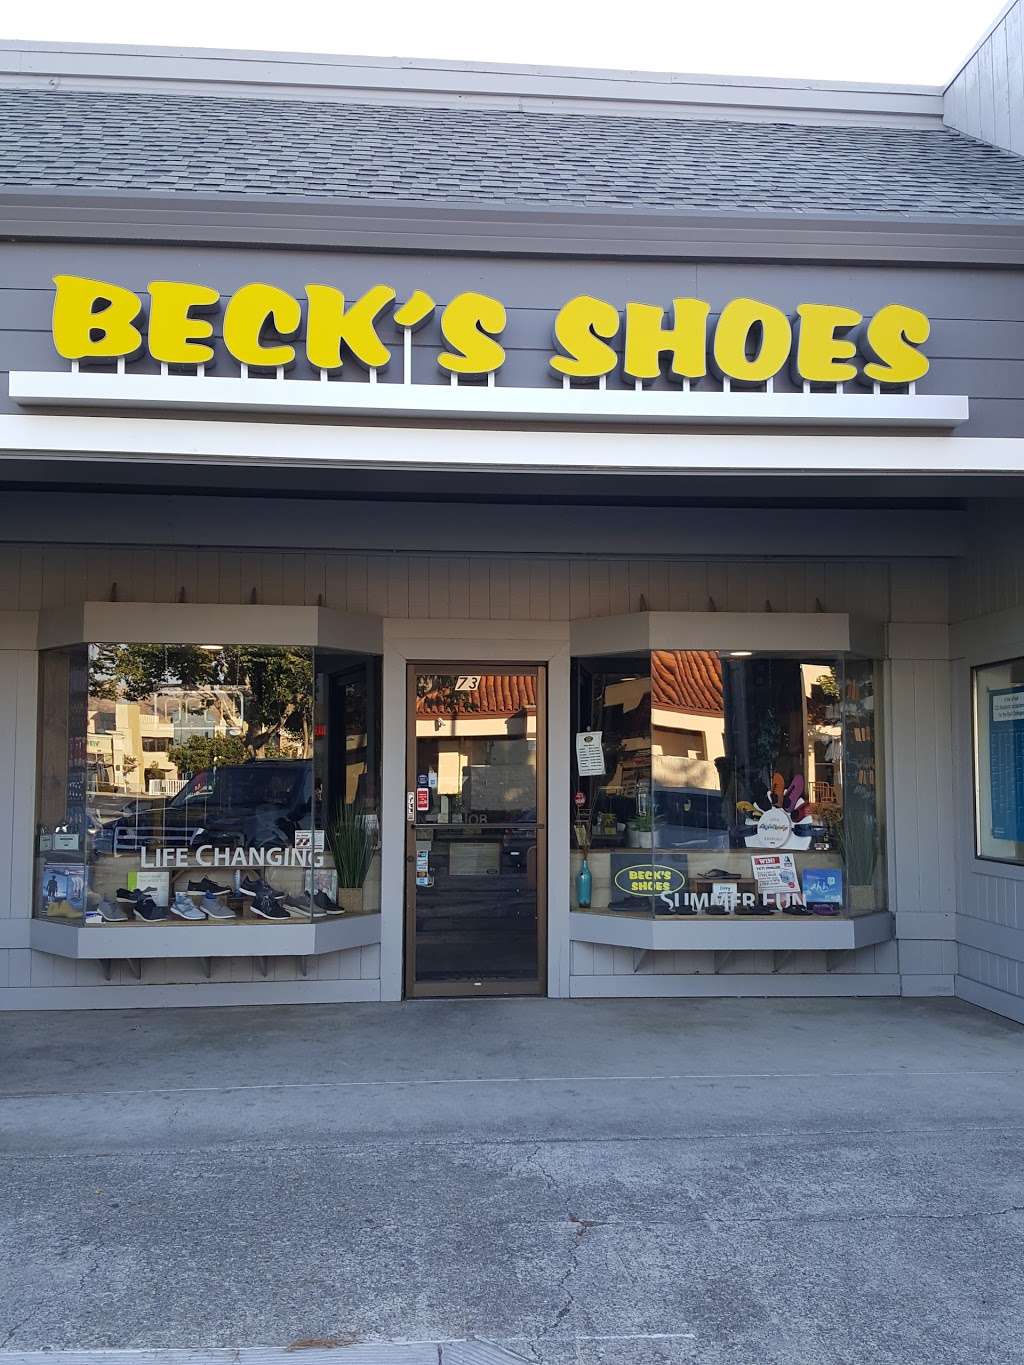 Beck's Shoes - 73 N Milpitas Blvd, Milpitas, CA 95035, USA - BusinessYab